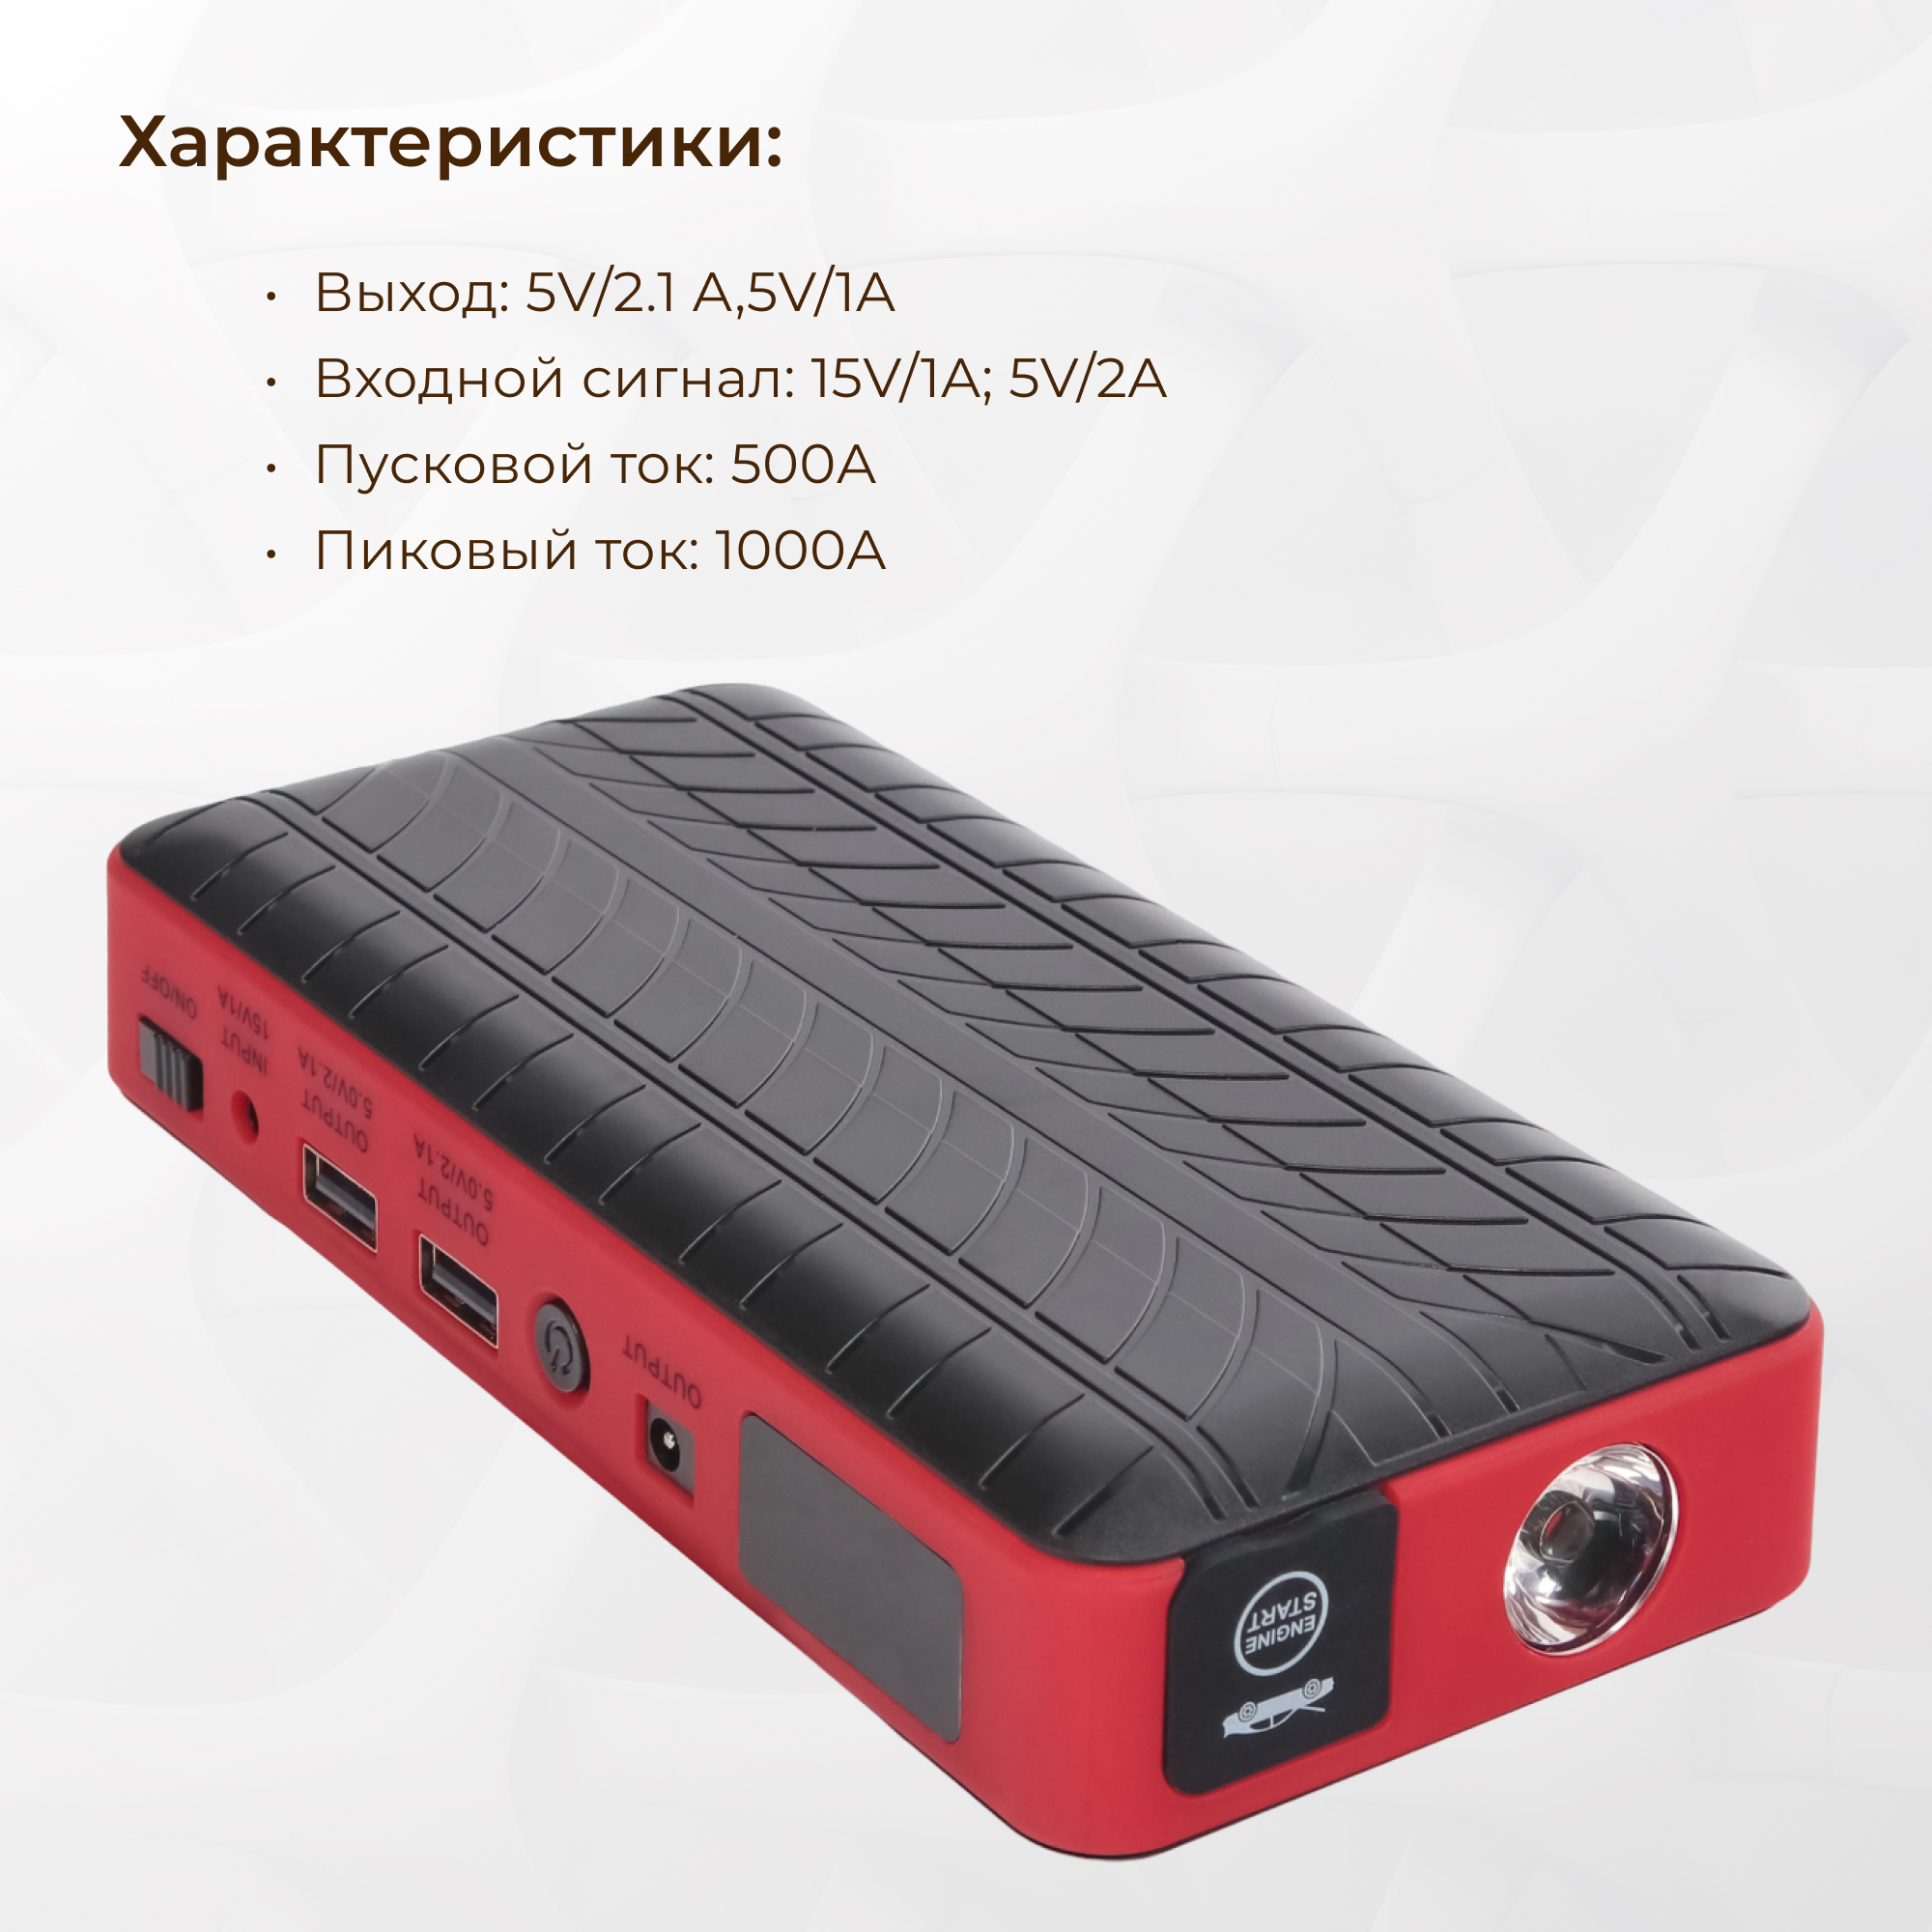 Пусковое устройство ANMA для авто 18000mAh, цвет красный - фото 3